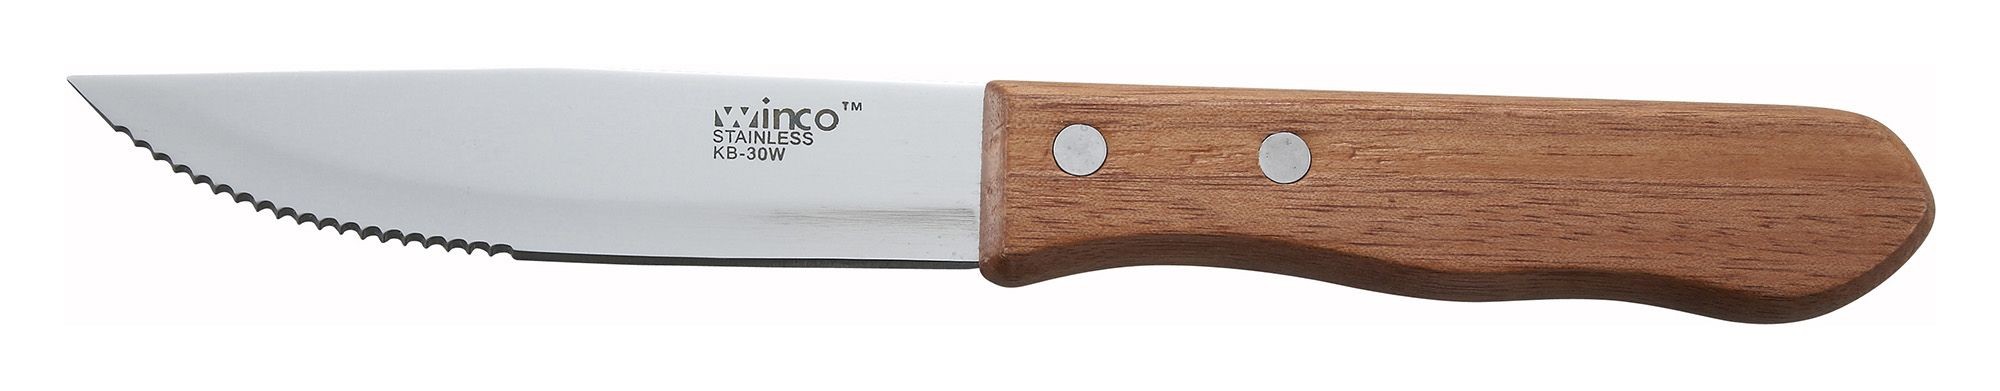 Heavy Duty Jumbo Steak Knife With Wooden Handle - 5 - LionsDeal